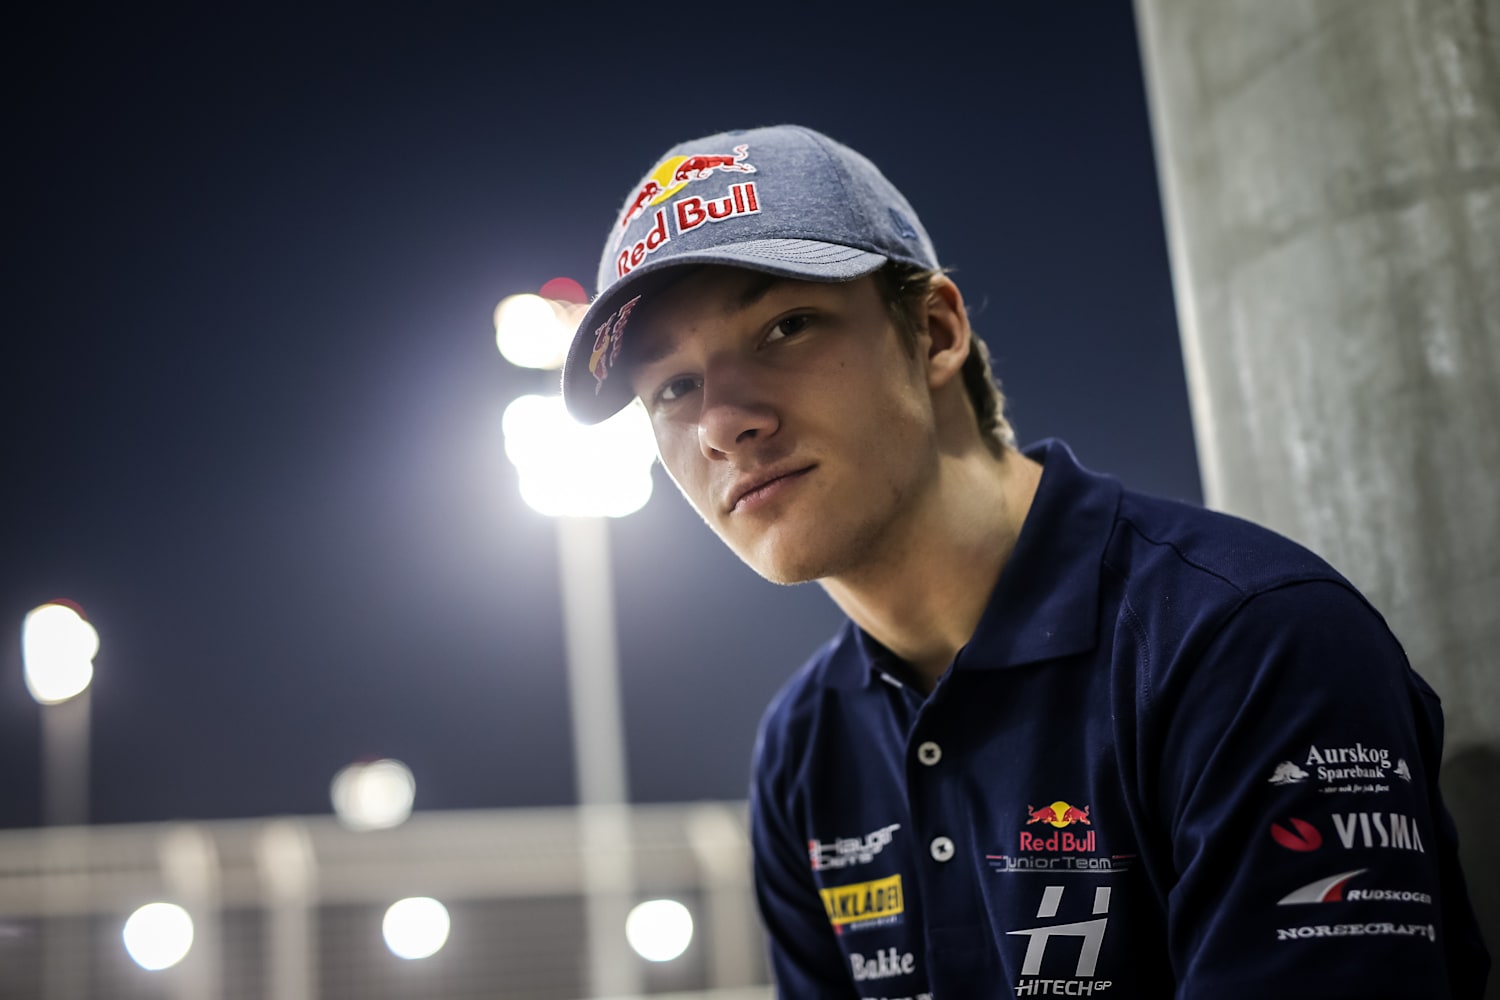 Dennis Hauger: Motorsport – Red Bull Athlete Profile